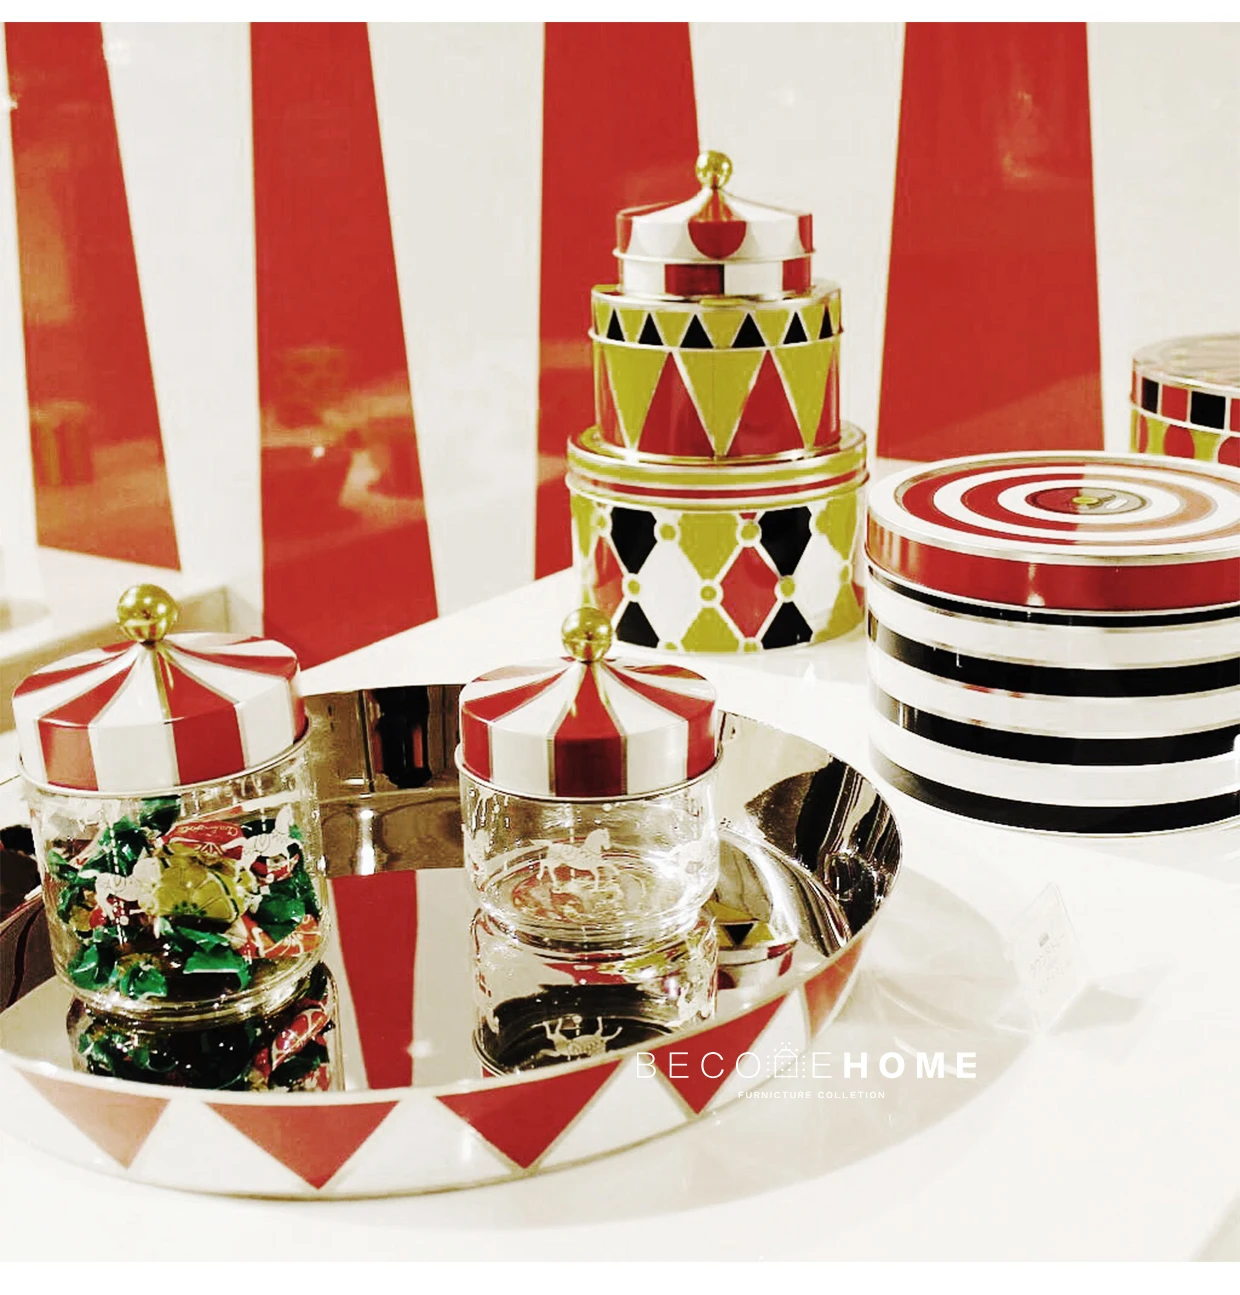 Скандинавская Италия винтажная цирковая труппа японские серьги из жемчуга стеклянная закупориваемая банка коробка для хранения сладостей сахарный бак для хранения Новогодняя Рождественская бутылка